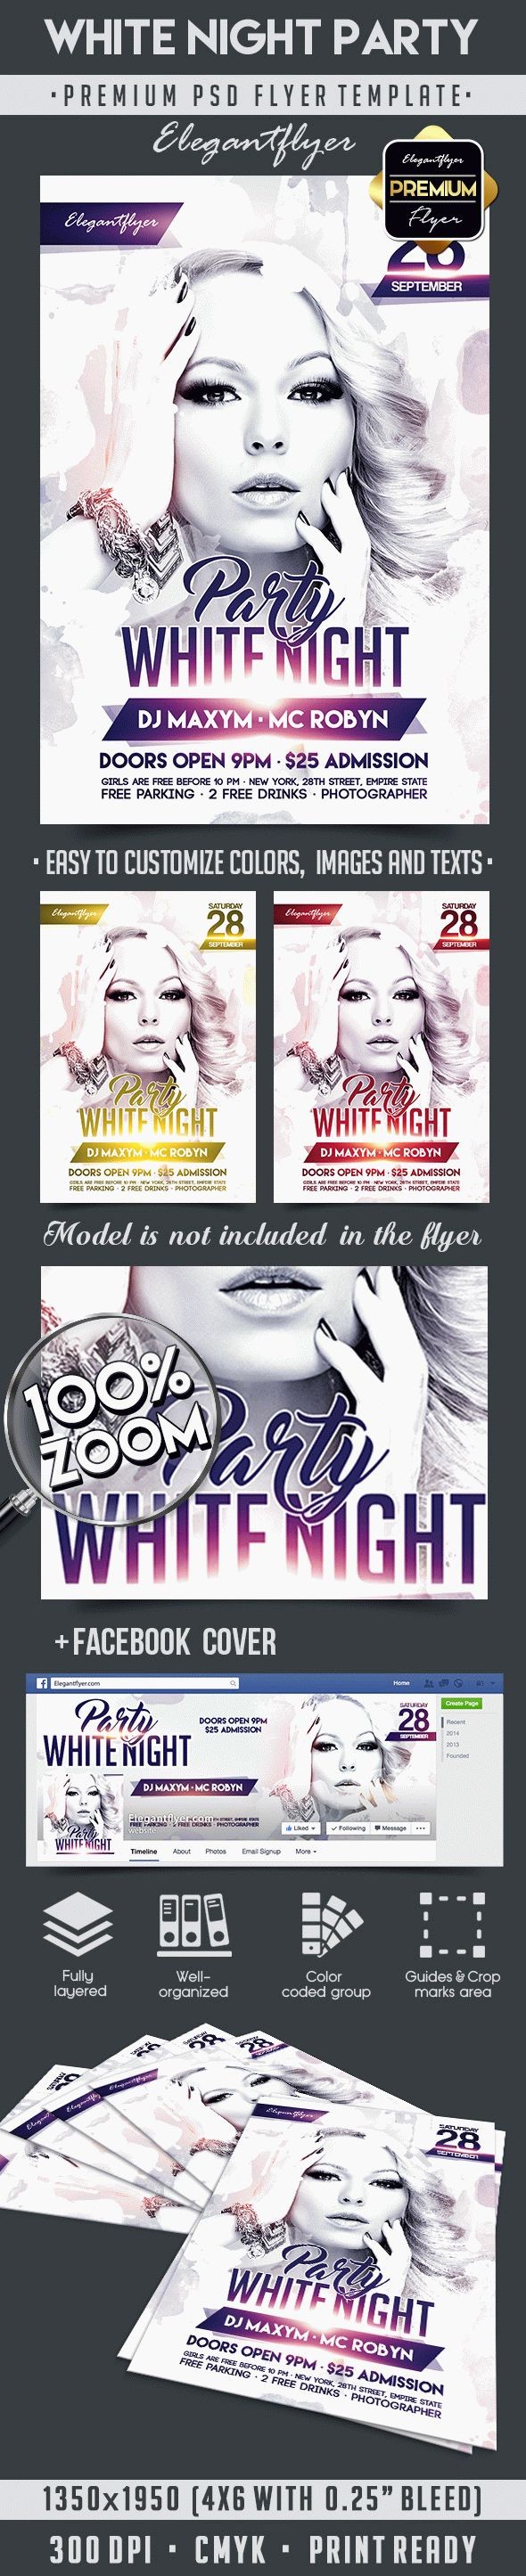 White Night Party by ElegantFlyer